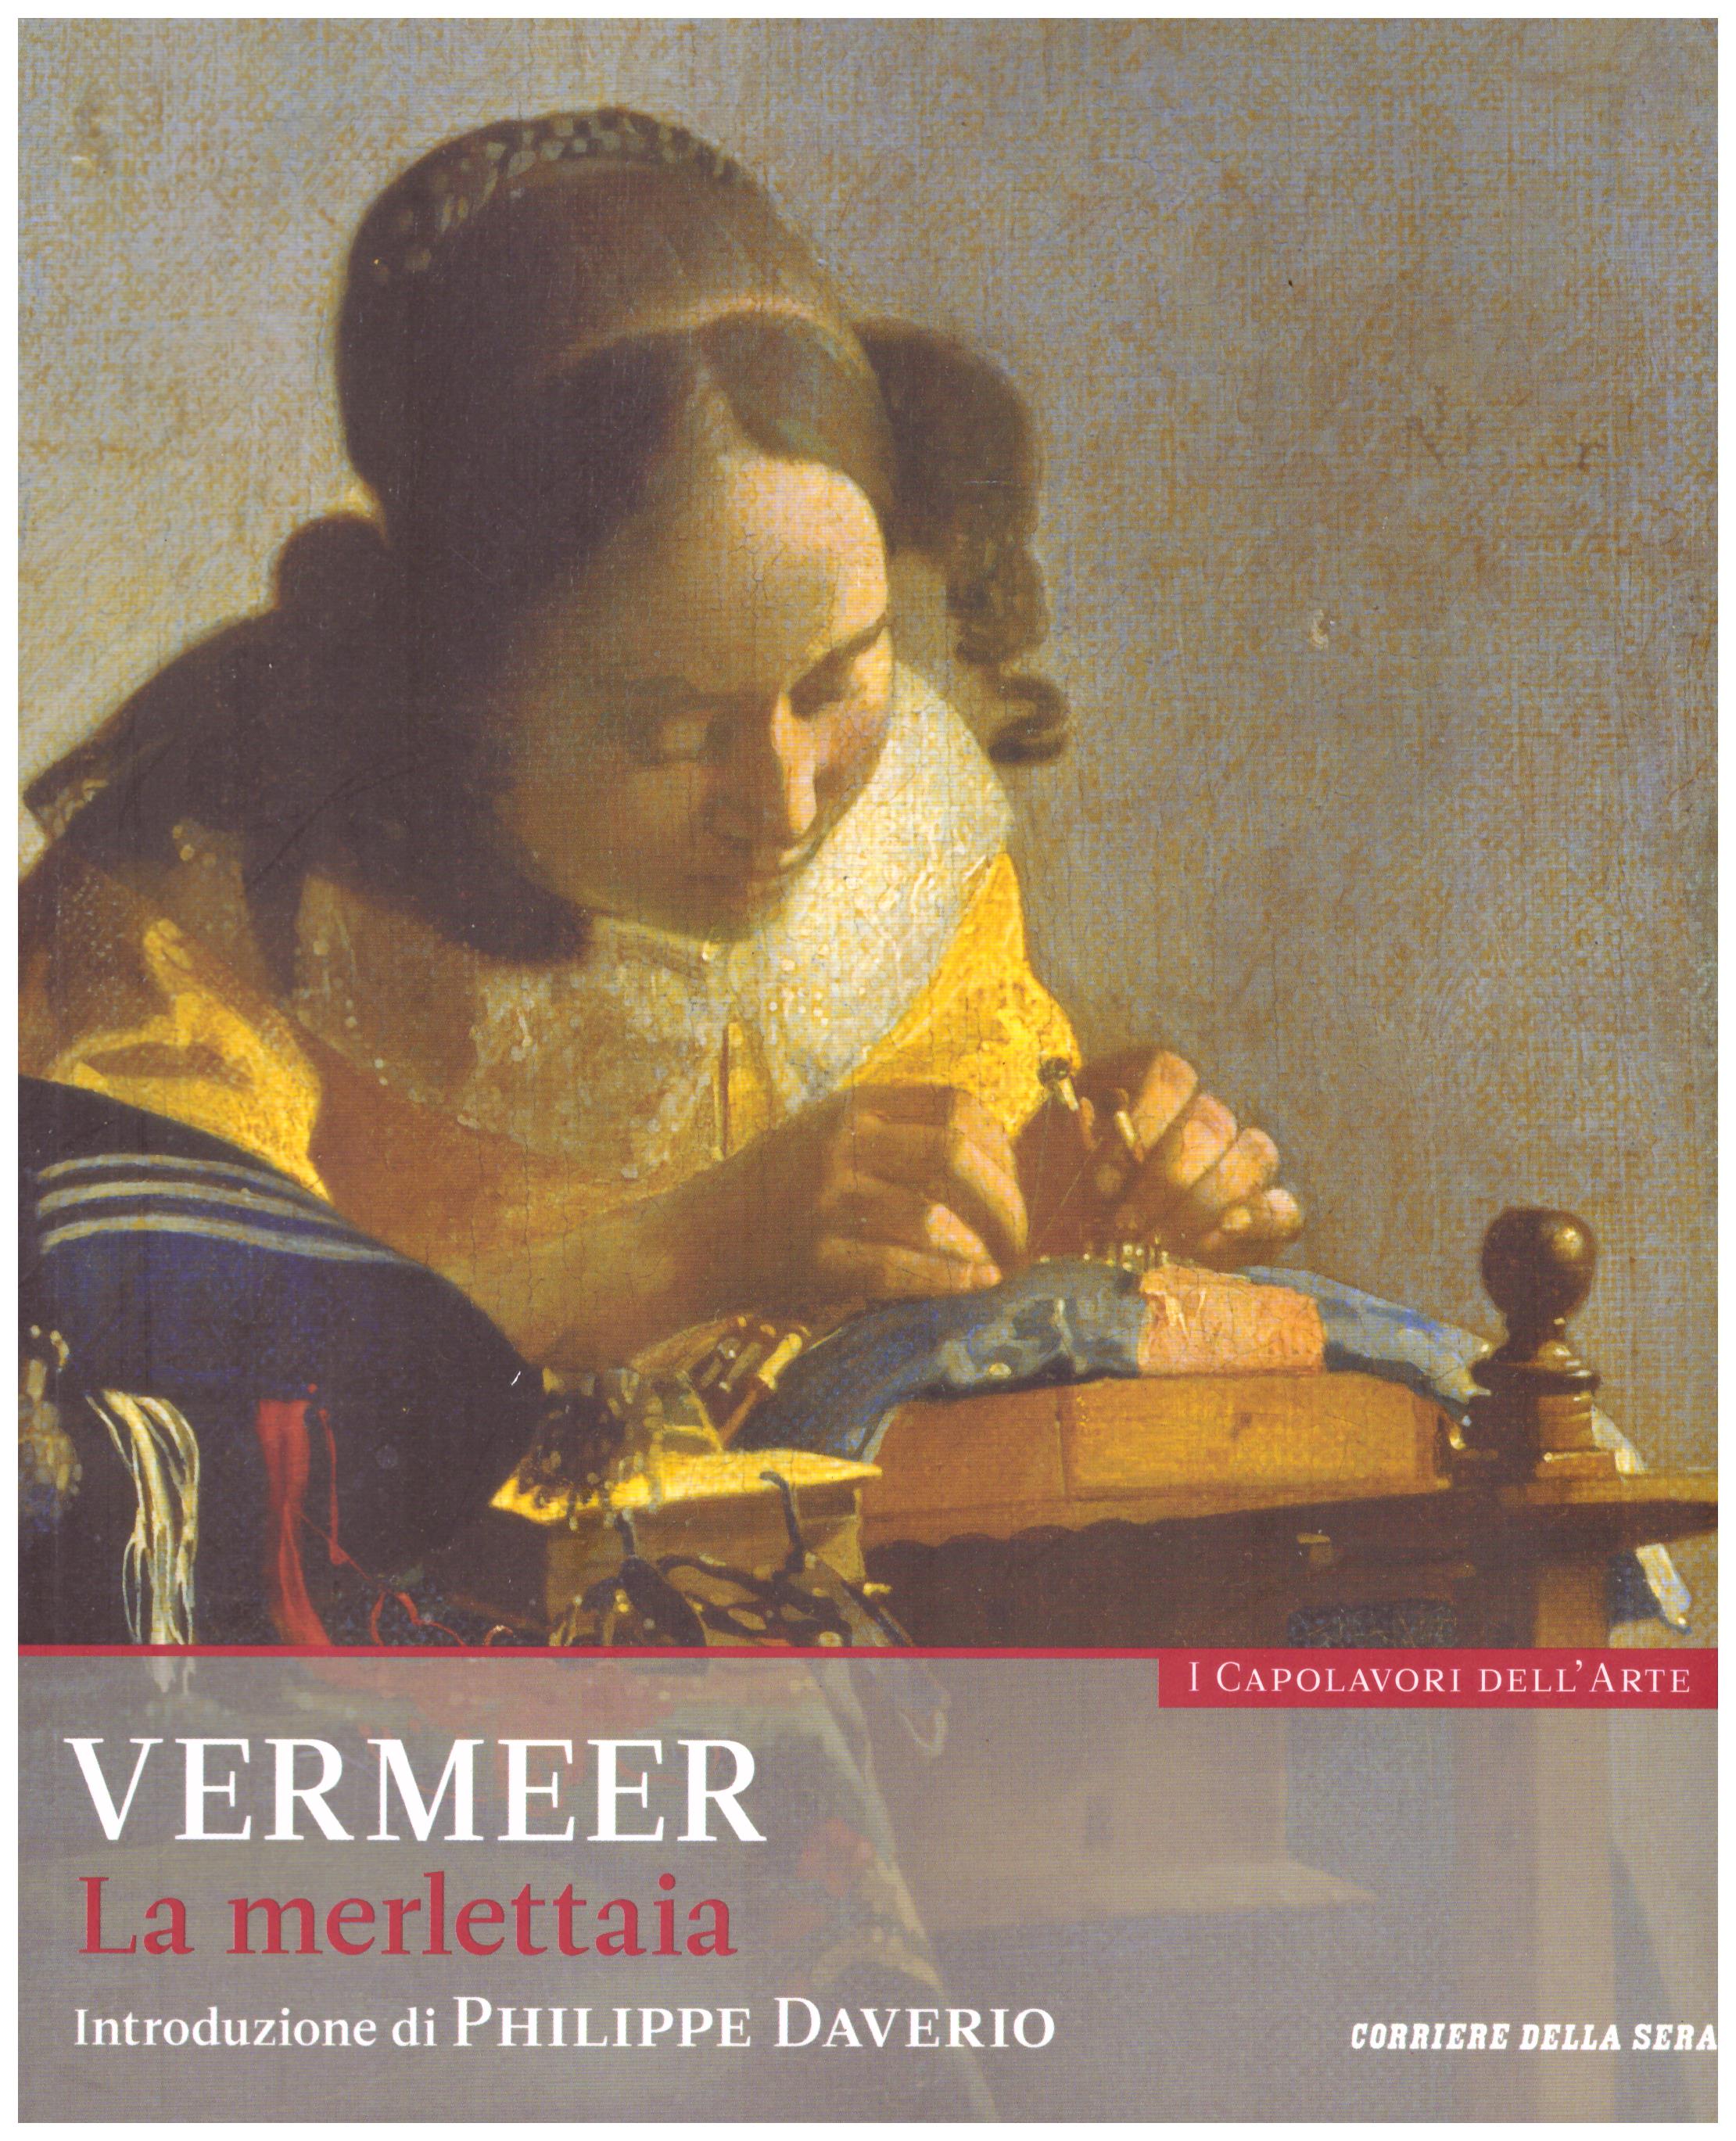 Titolo: I capolavori dell'arte, Vermeer n.6 Autore : AA.VV.   Editore: education,it/corriere della sera, 2015